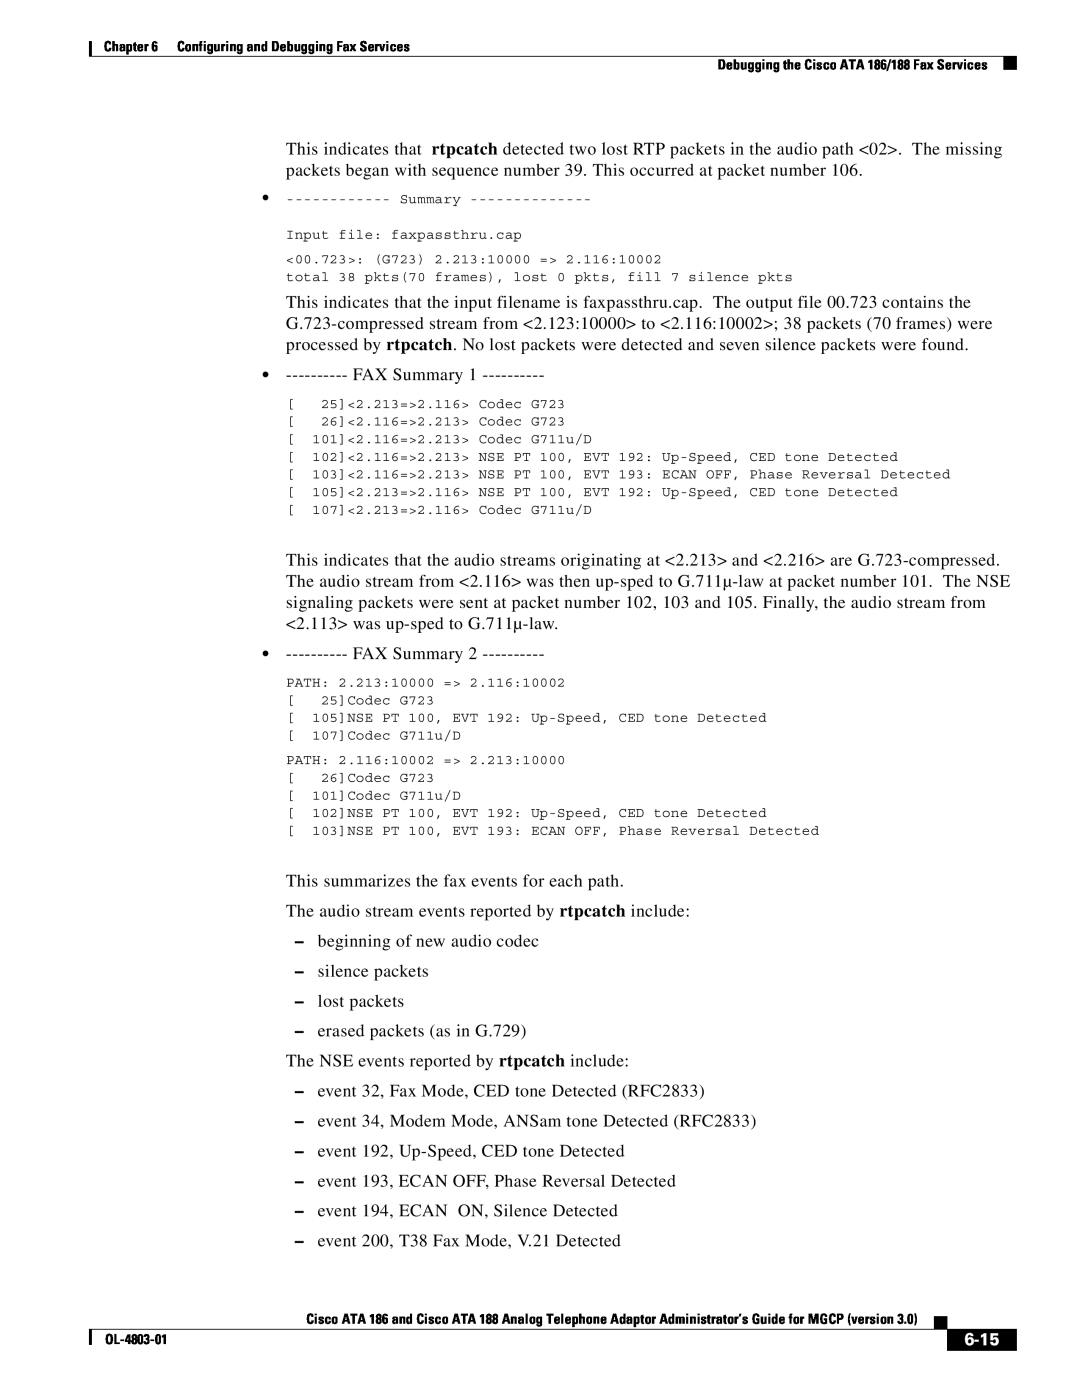 Cisco Systems ATA 188, ATA 186 manual 6-15, FAX Summary 